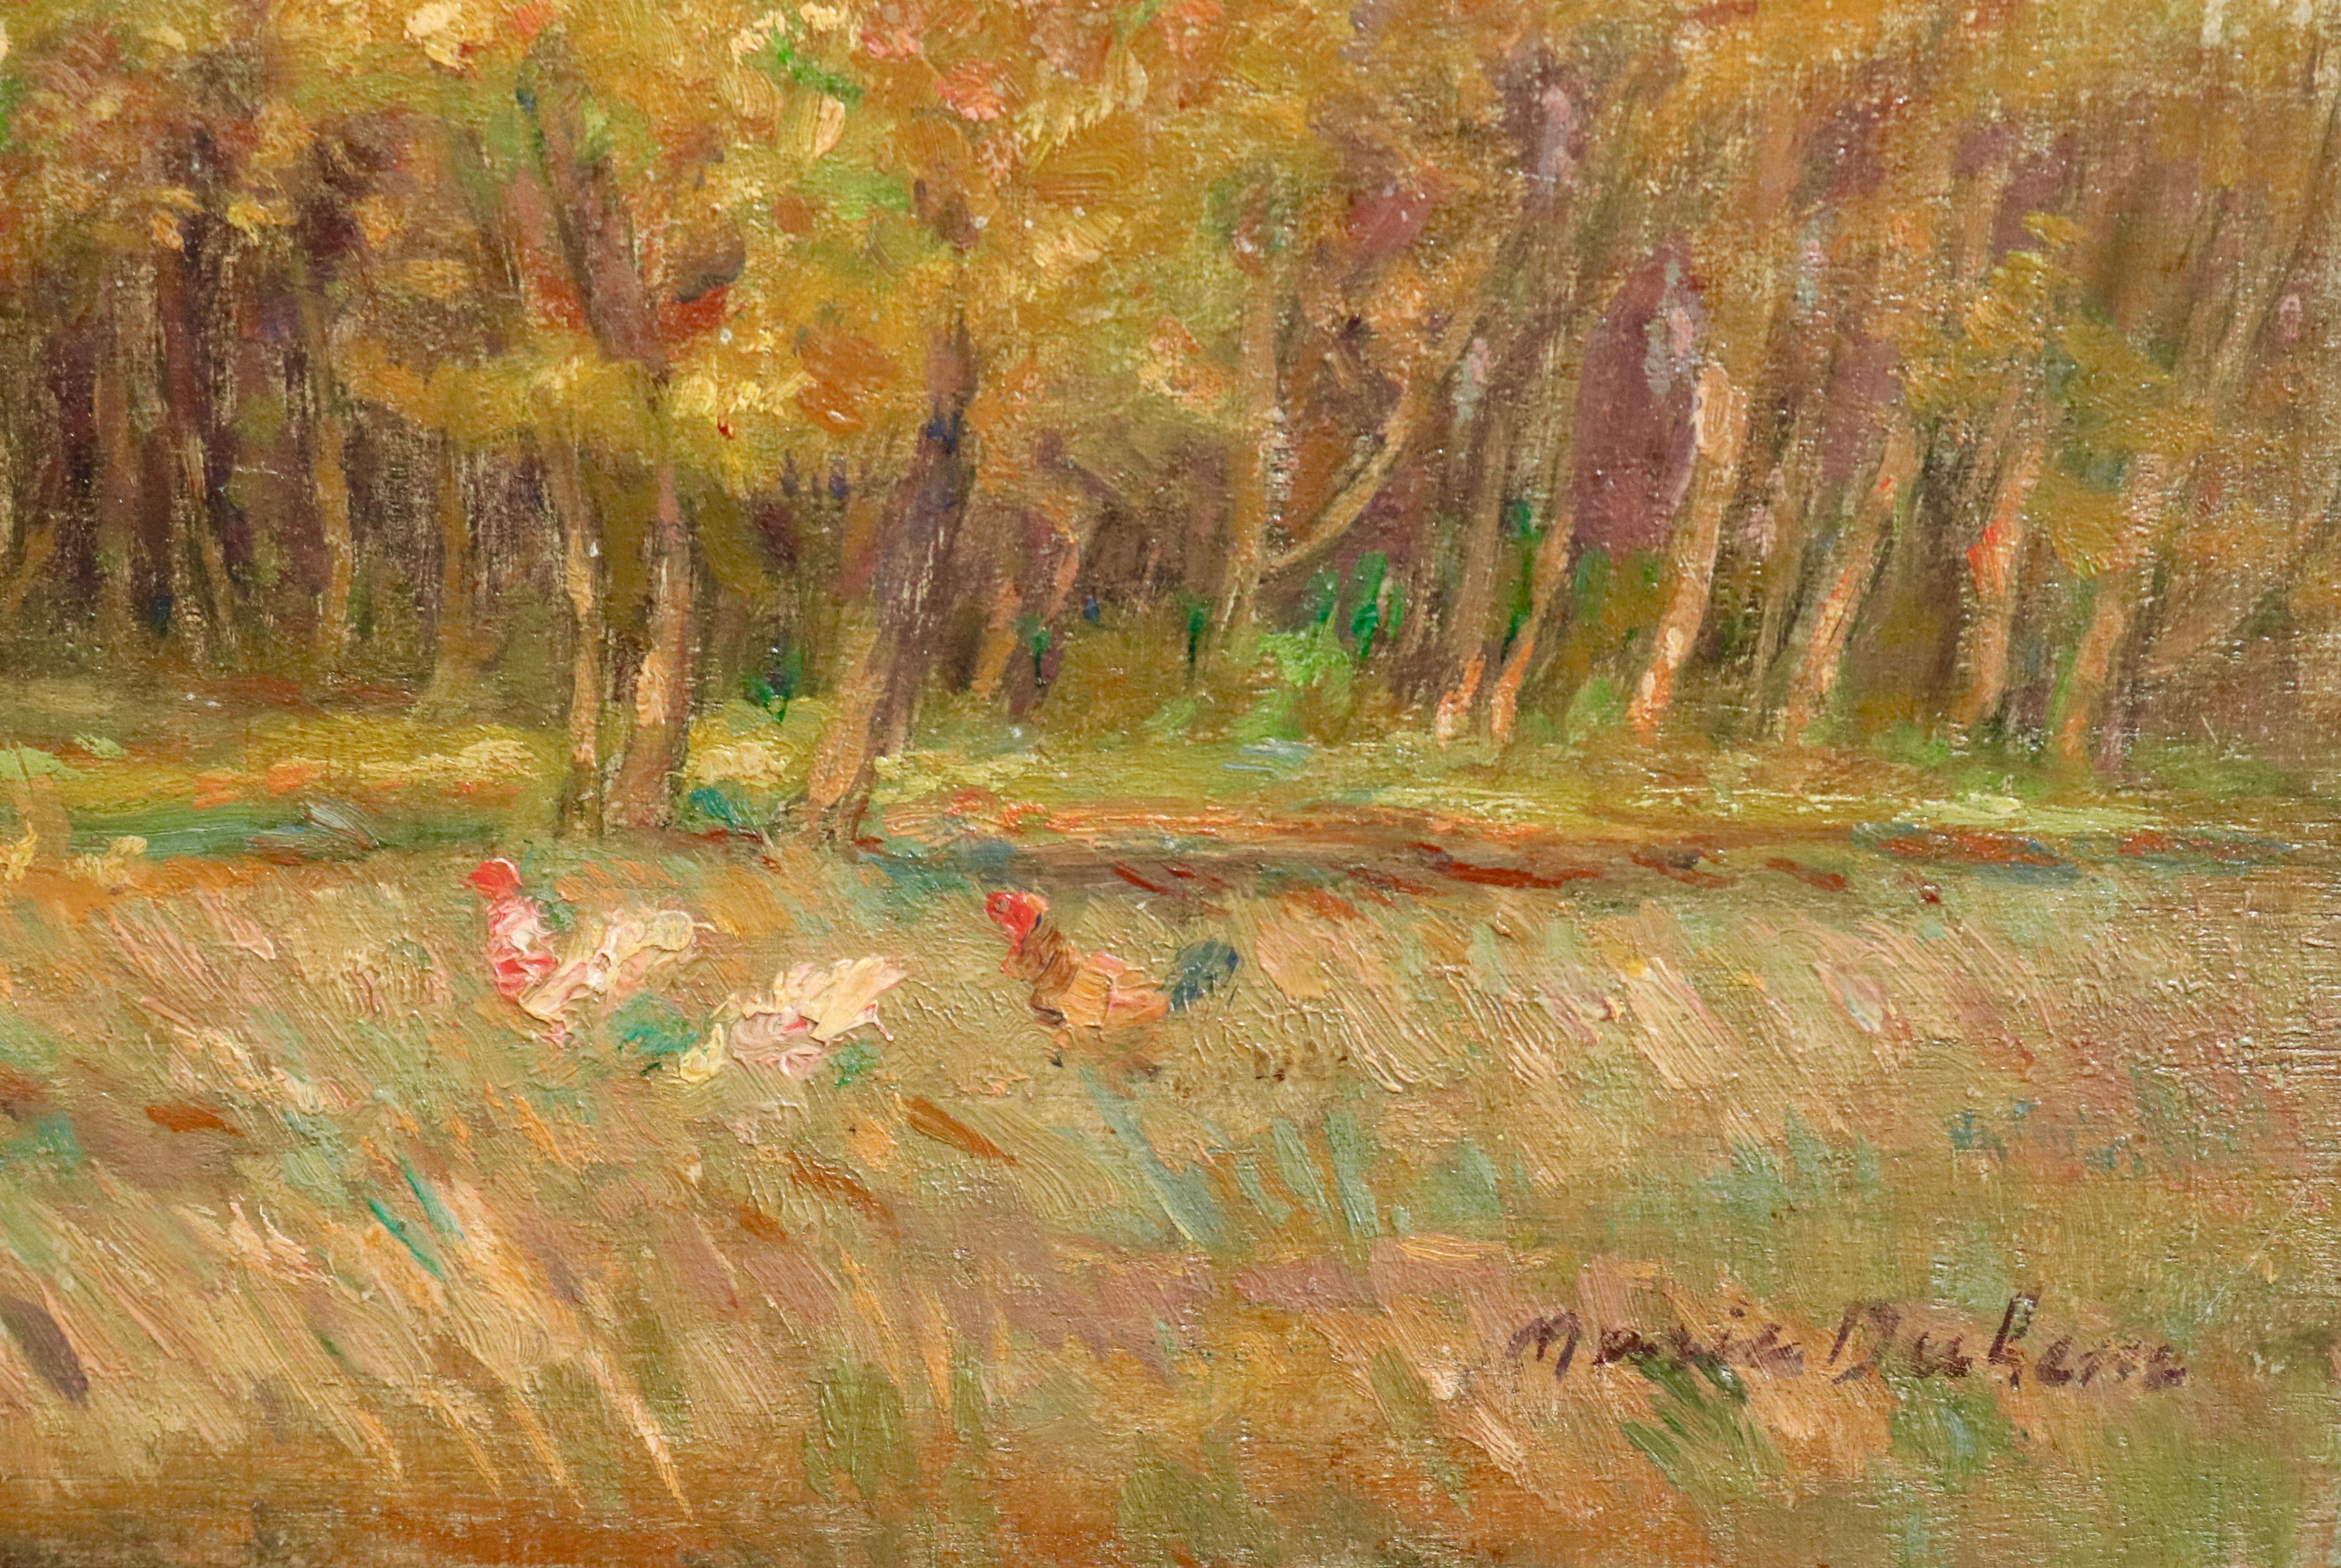 L'Automne - 19th Century Oil, Woman & Chickens Autumn Landscape by Marie Duhem 1